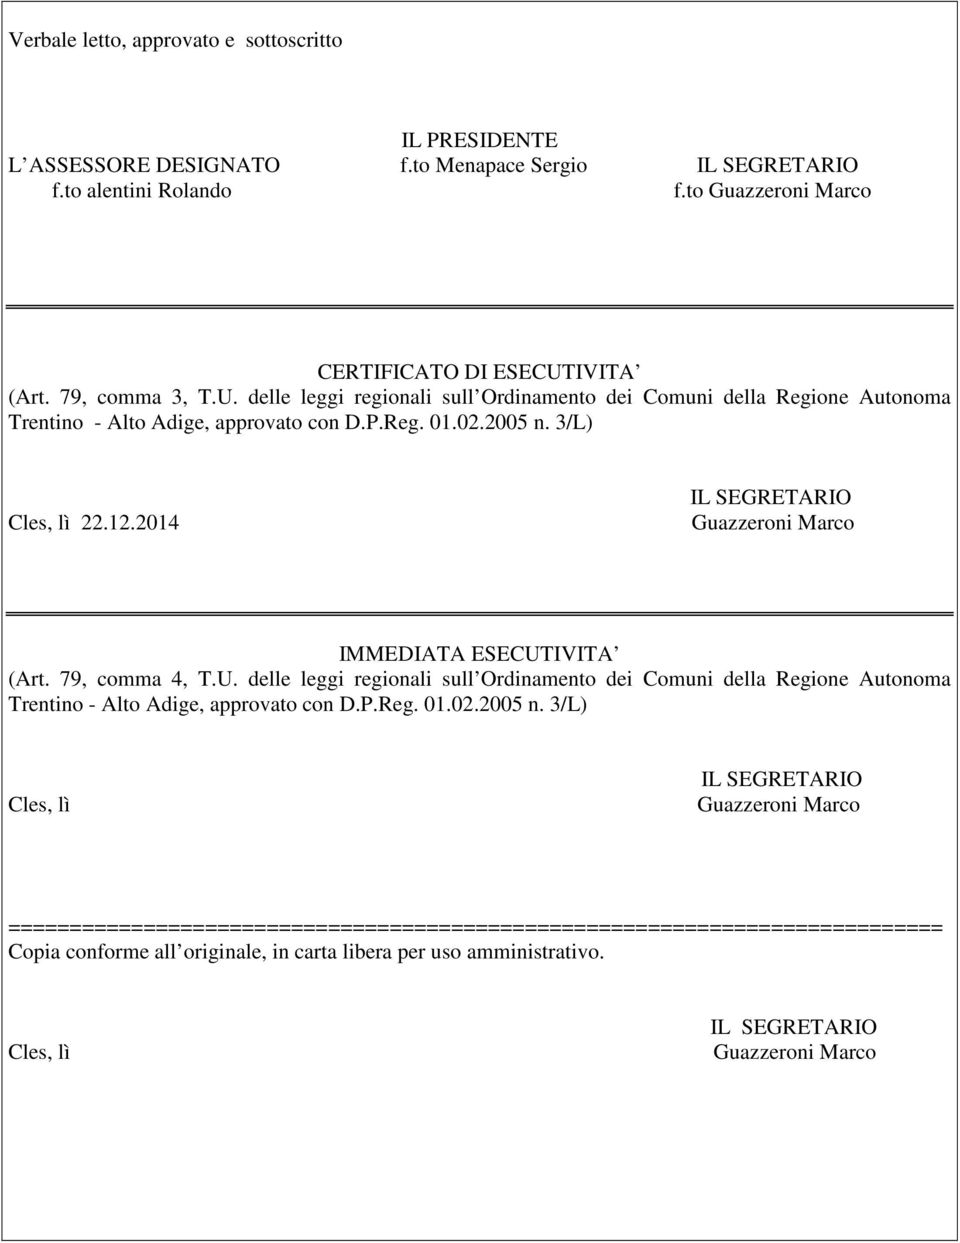 2014 IMMEDIATA ESECUTIVITA (Art. 79, comma 4, T.U. delle leggi regionali sull Ordinamento dei Comuni della Regione Autonoma Trentino - Alto Adige, approvato con D.P.Reg. 01.